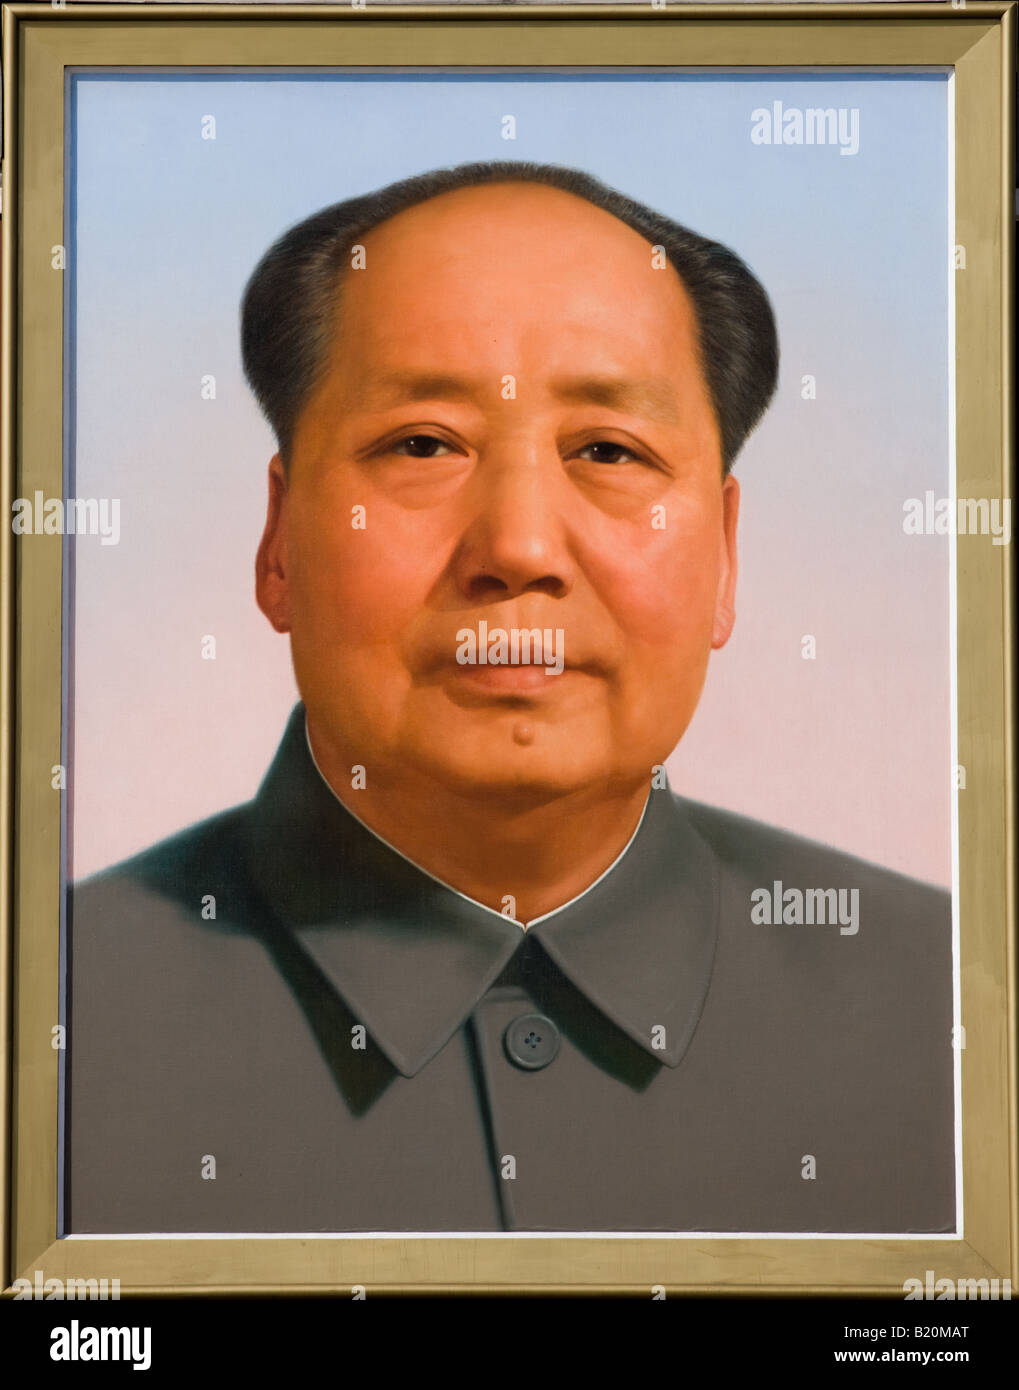 Le président Mao s portrait à la porte de la paix céleste Entrée de la Cité Interdite, Beijing Chine Banque D'Images